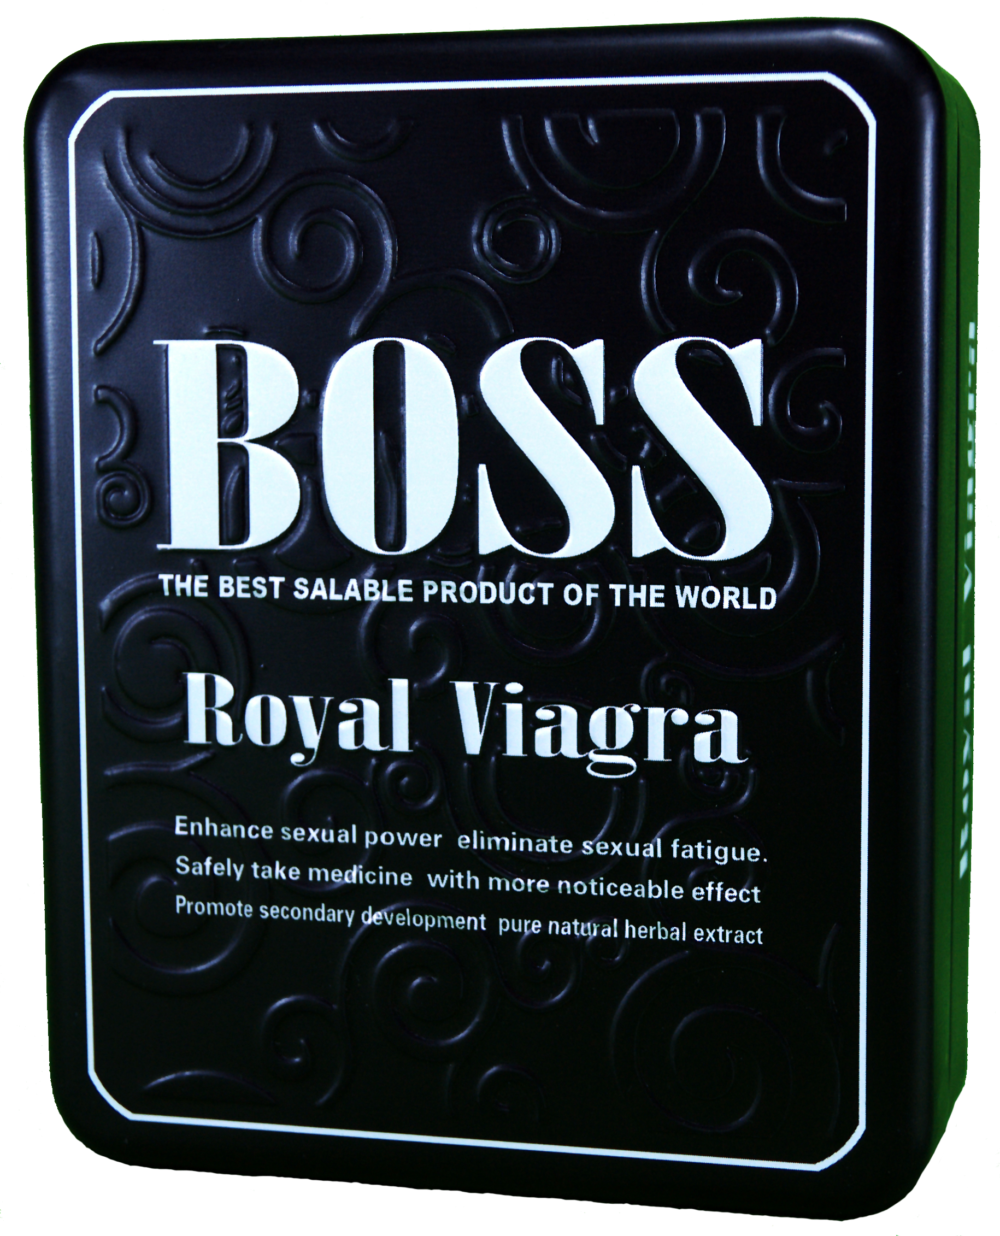 Виагра инструкция отзывы мужчин. Препарат Boss Royal viagra. БАДЫ для мужчин босс Роял виагра. Boss Royal viagra инструкция.